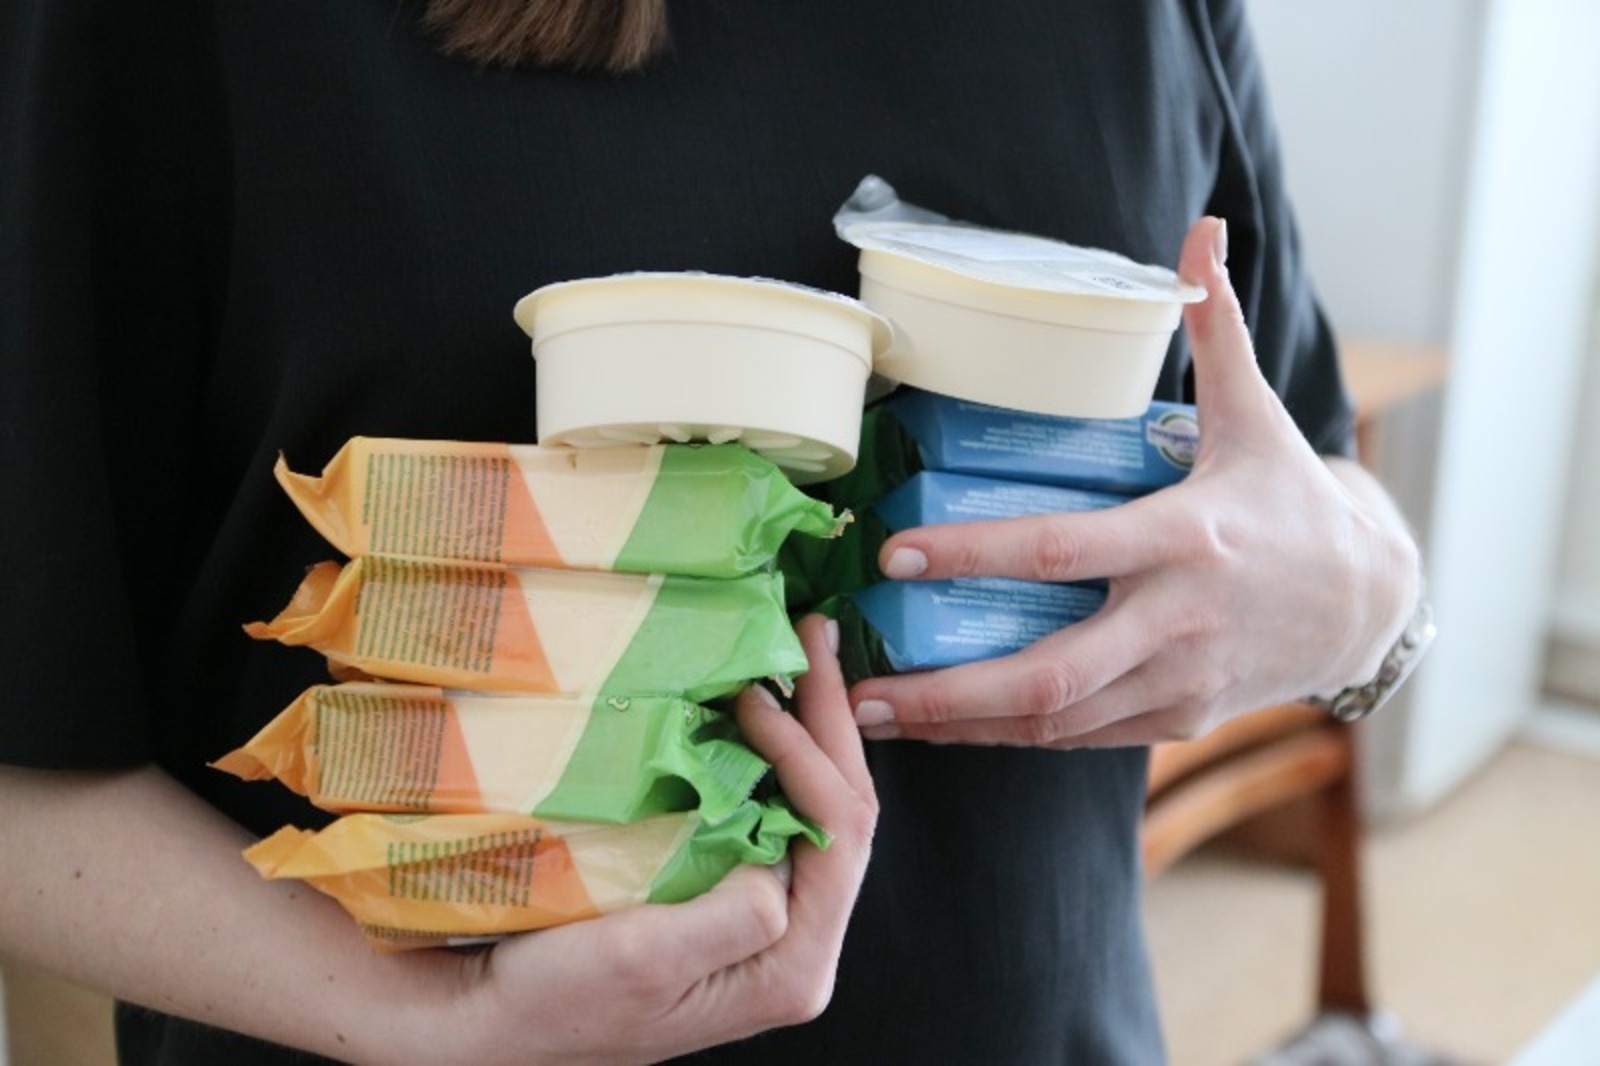 Хранение сыров и сливочного масла тоже должно быть по правилам: сыр в заводской упаковке не терпит перепада температур, а сливочное масло лучше хранить в морозильнике. / Фото: Виктор Лушкин